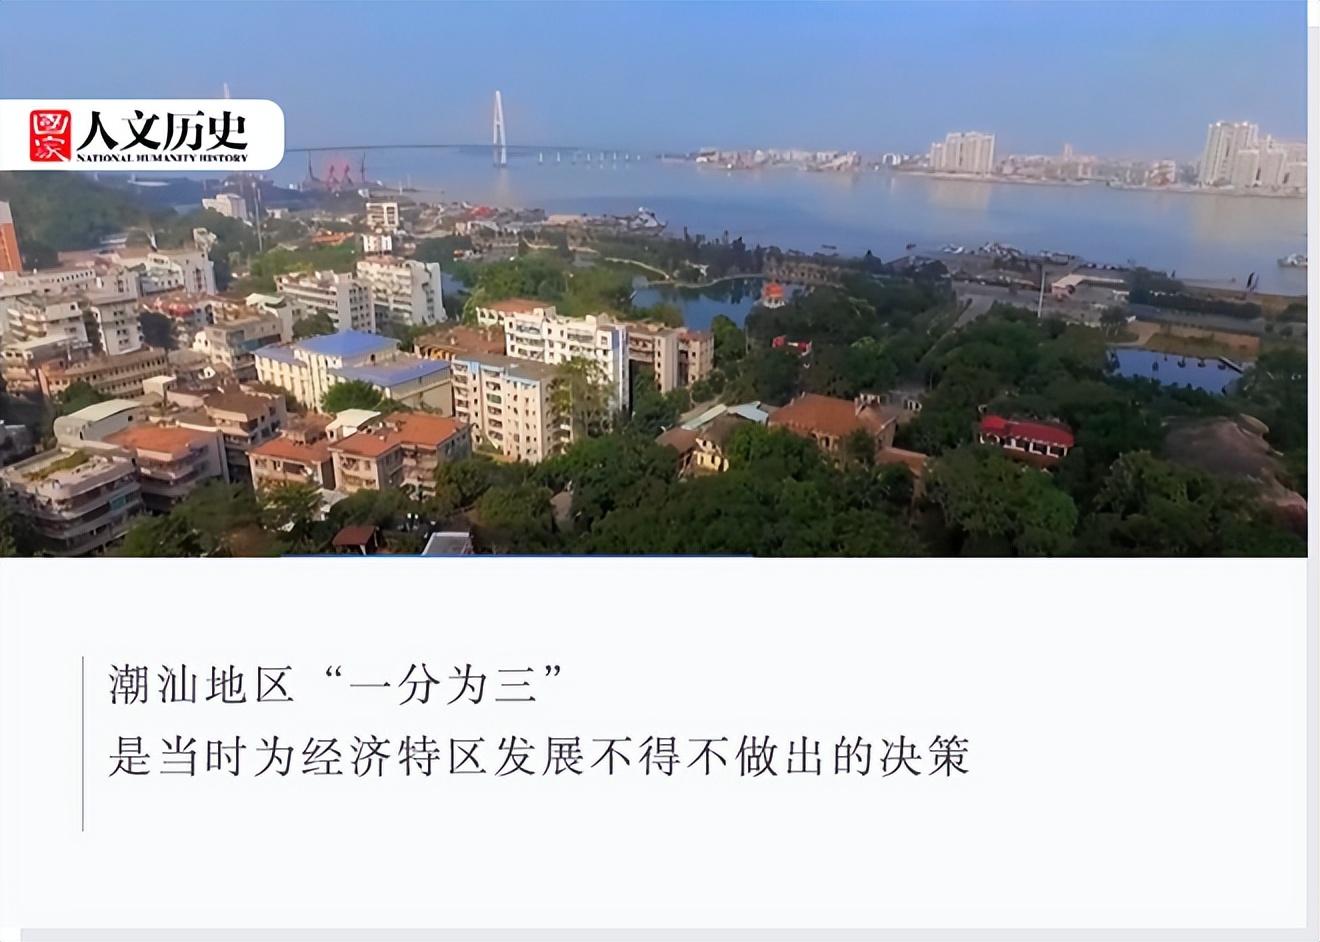 潮汕是哪个省的城市,潮汕旅游几月份去最合适